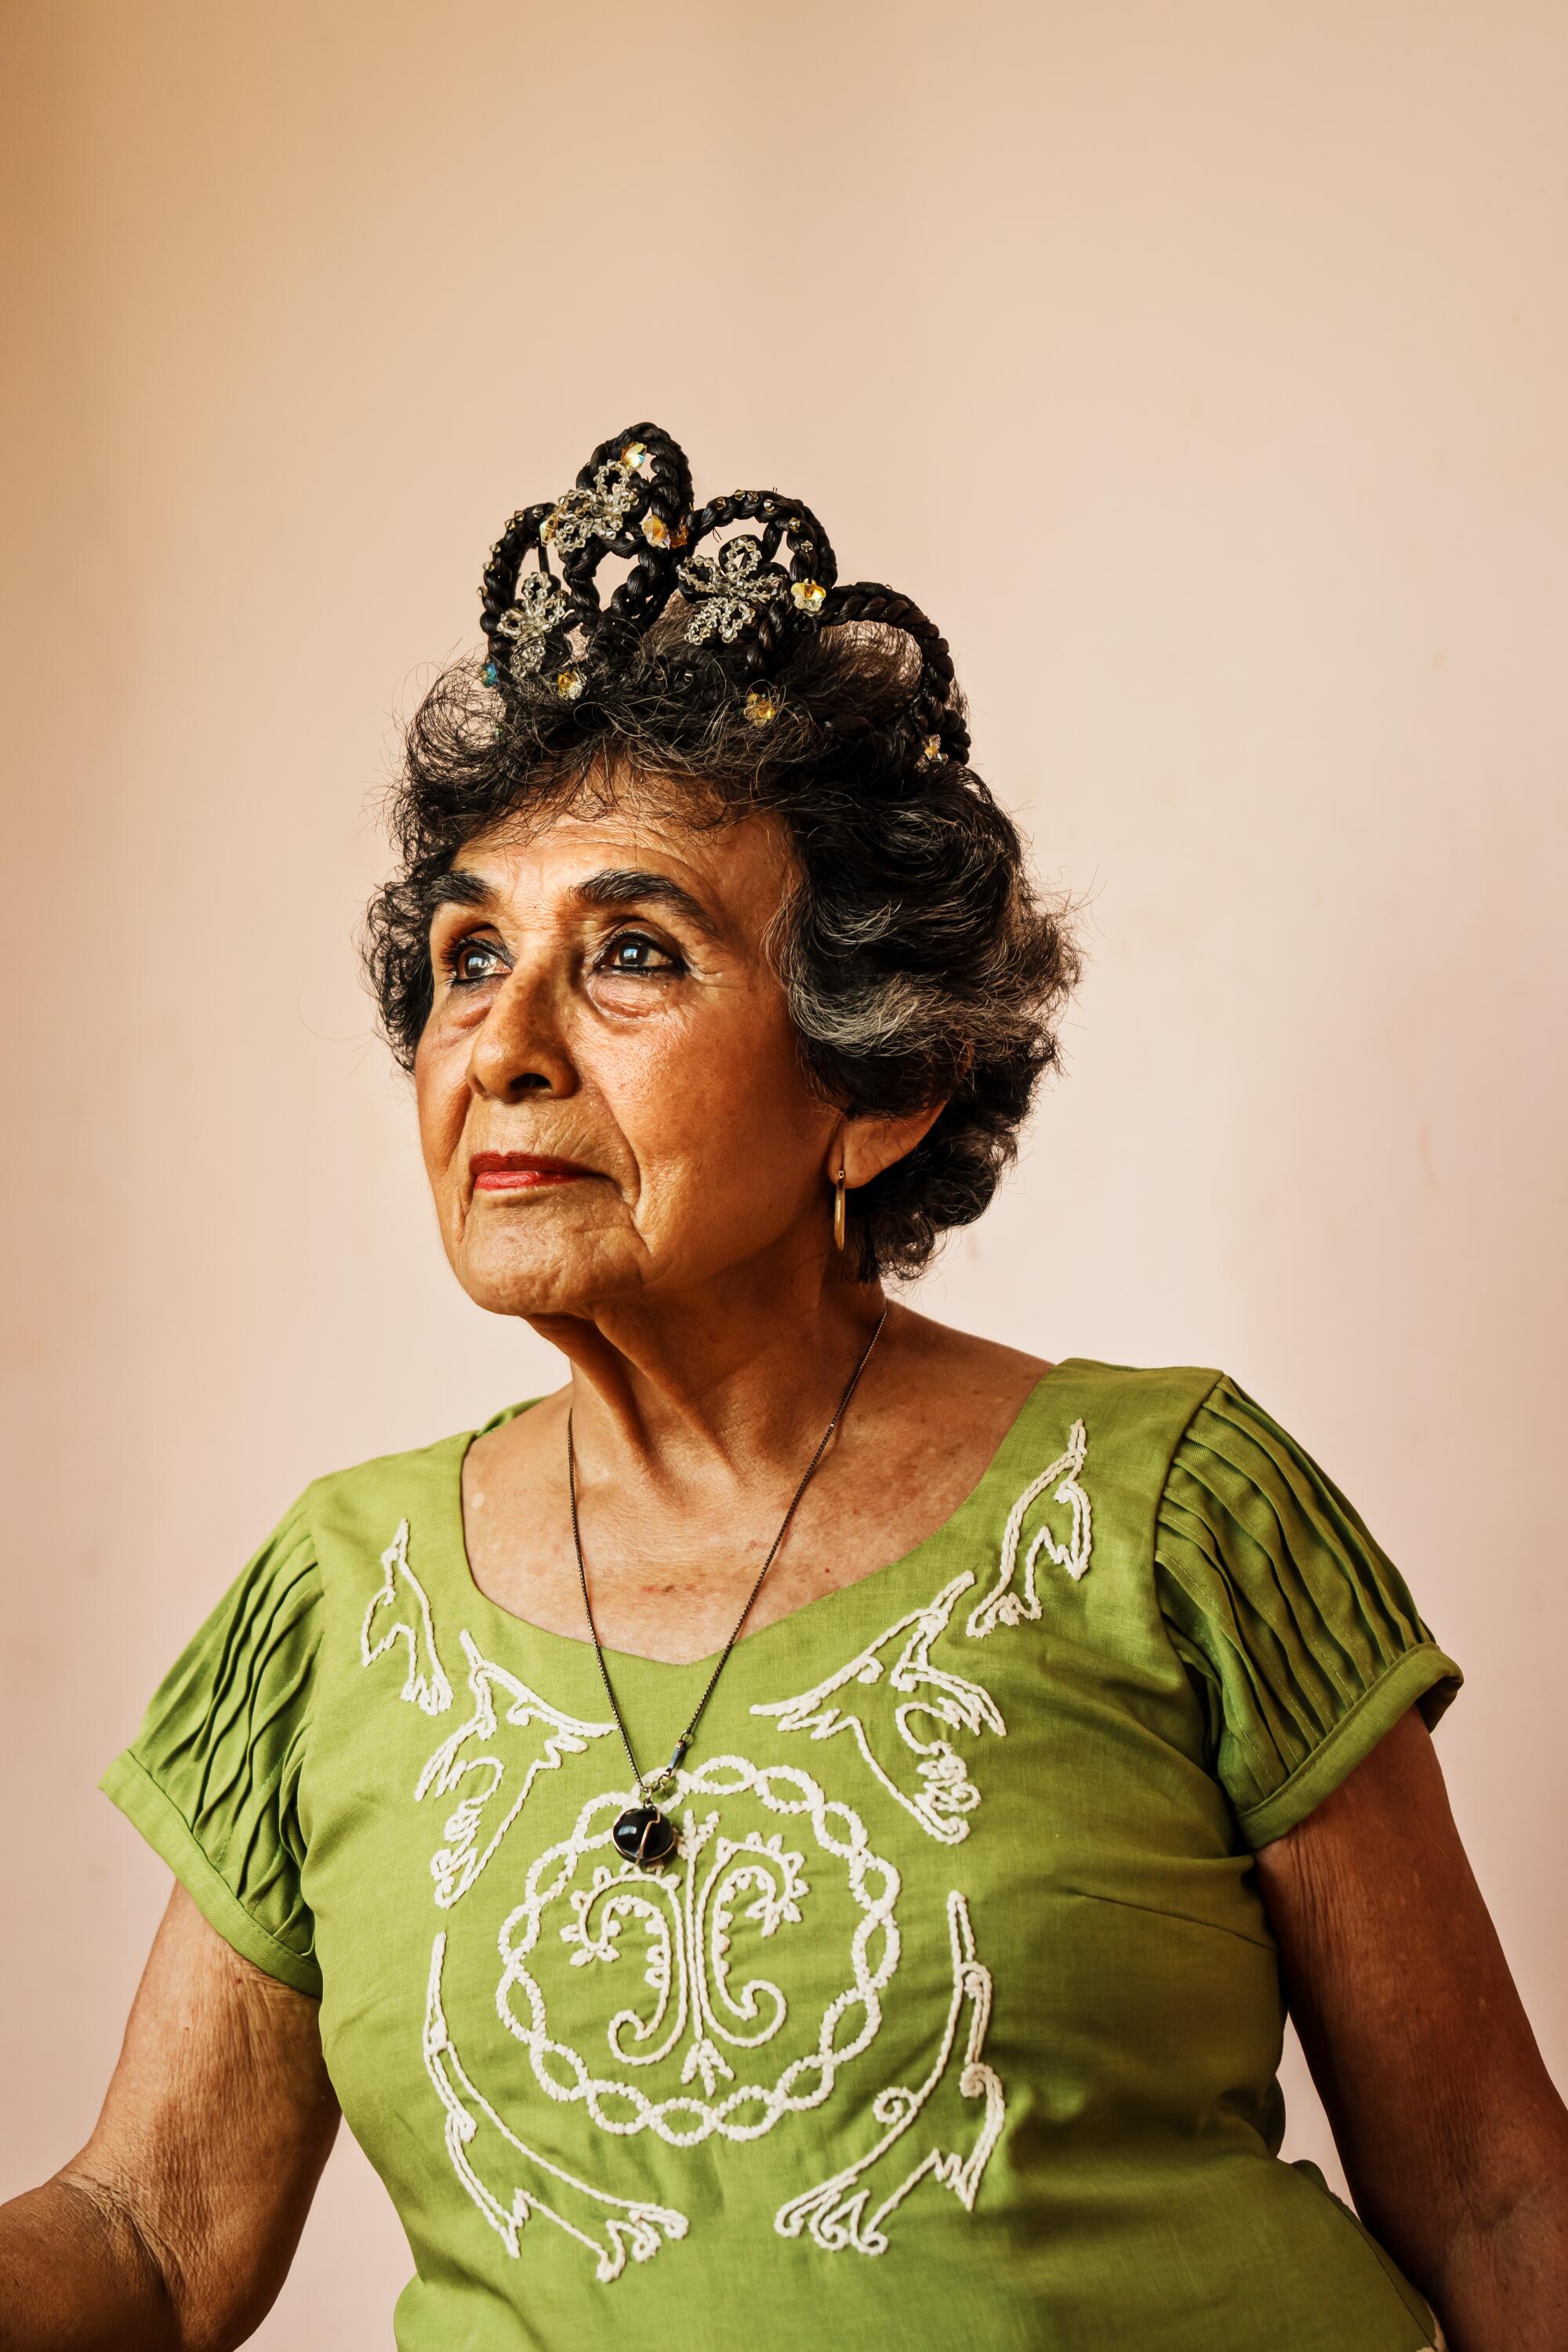 84 岁的阿尔玛·罗莎·冈萨雷斯·埃雷拉 (Alma Rosa González Herrera) 戴着香草王冠摆出姿势拍照。